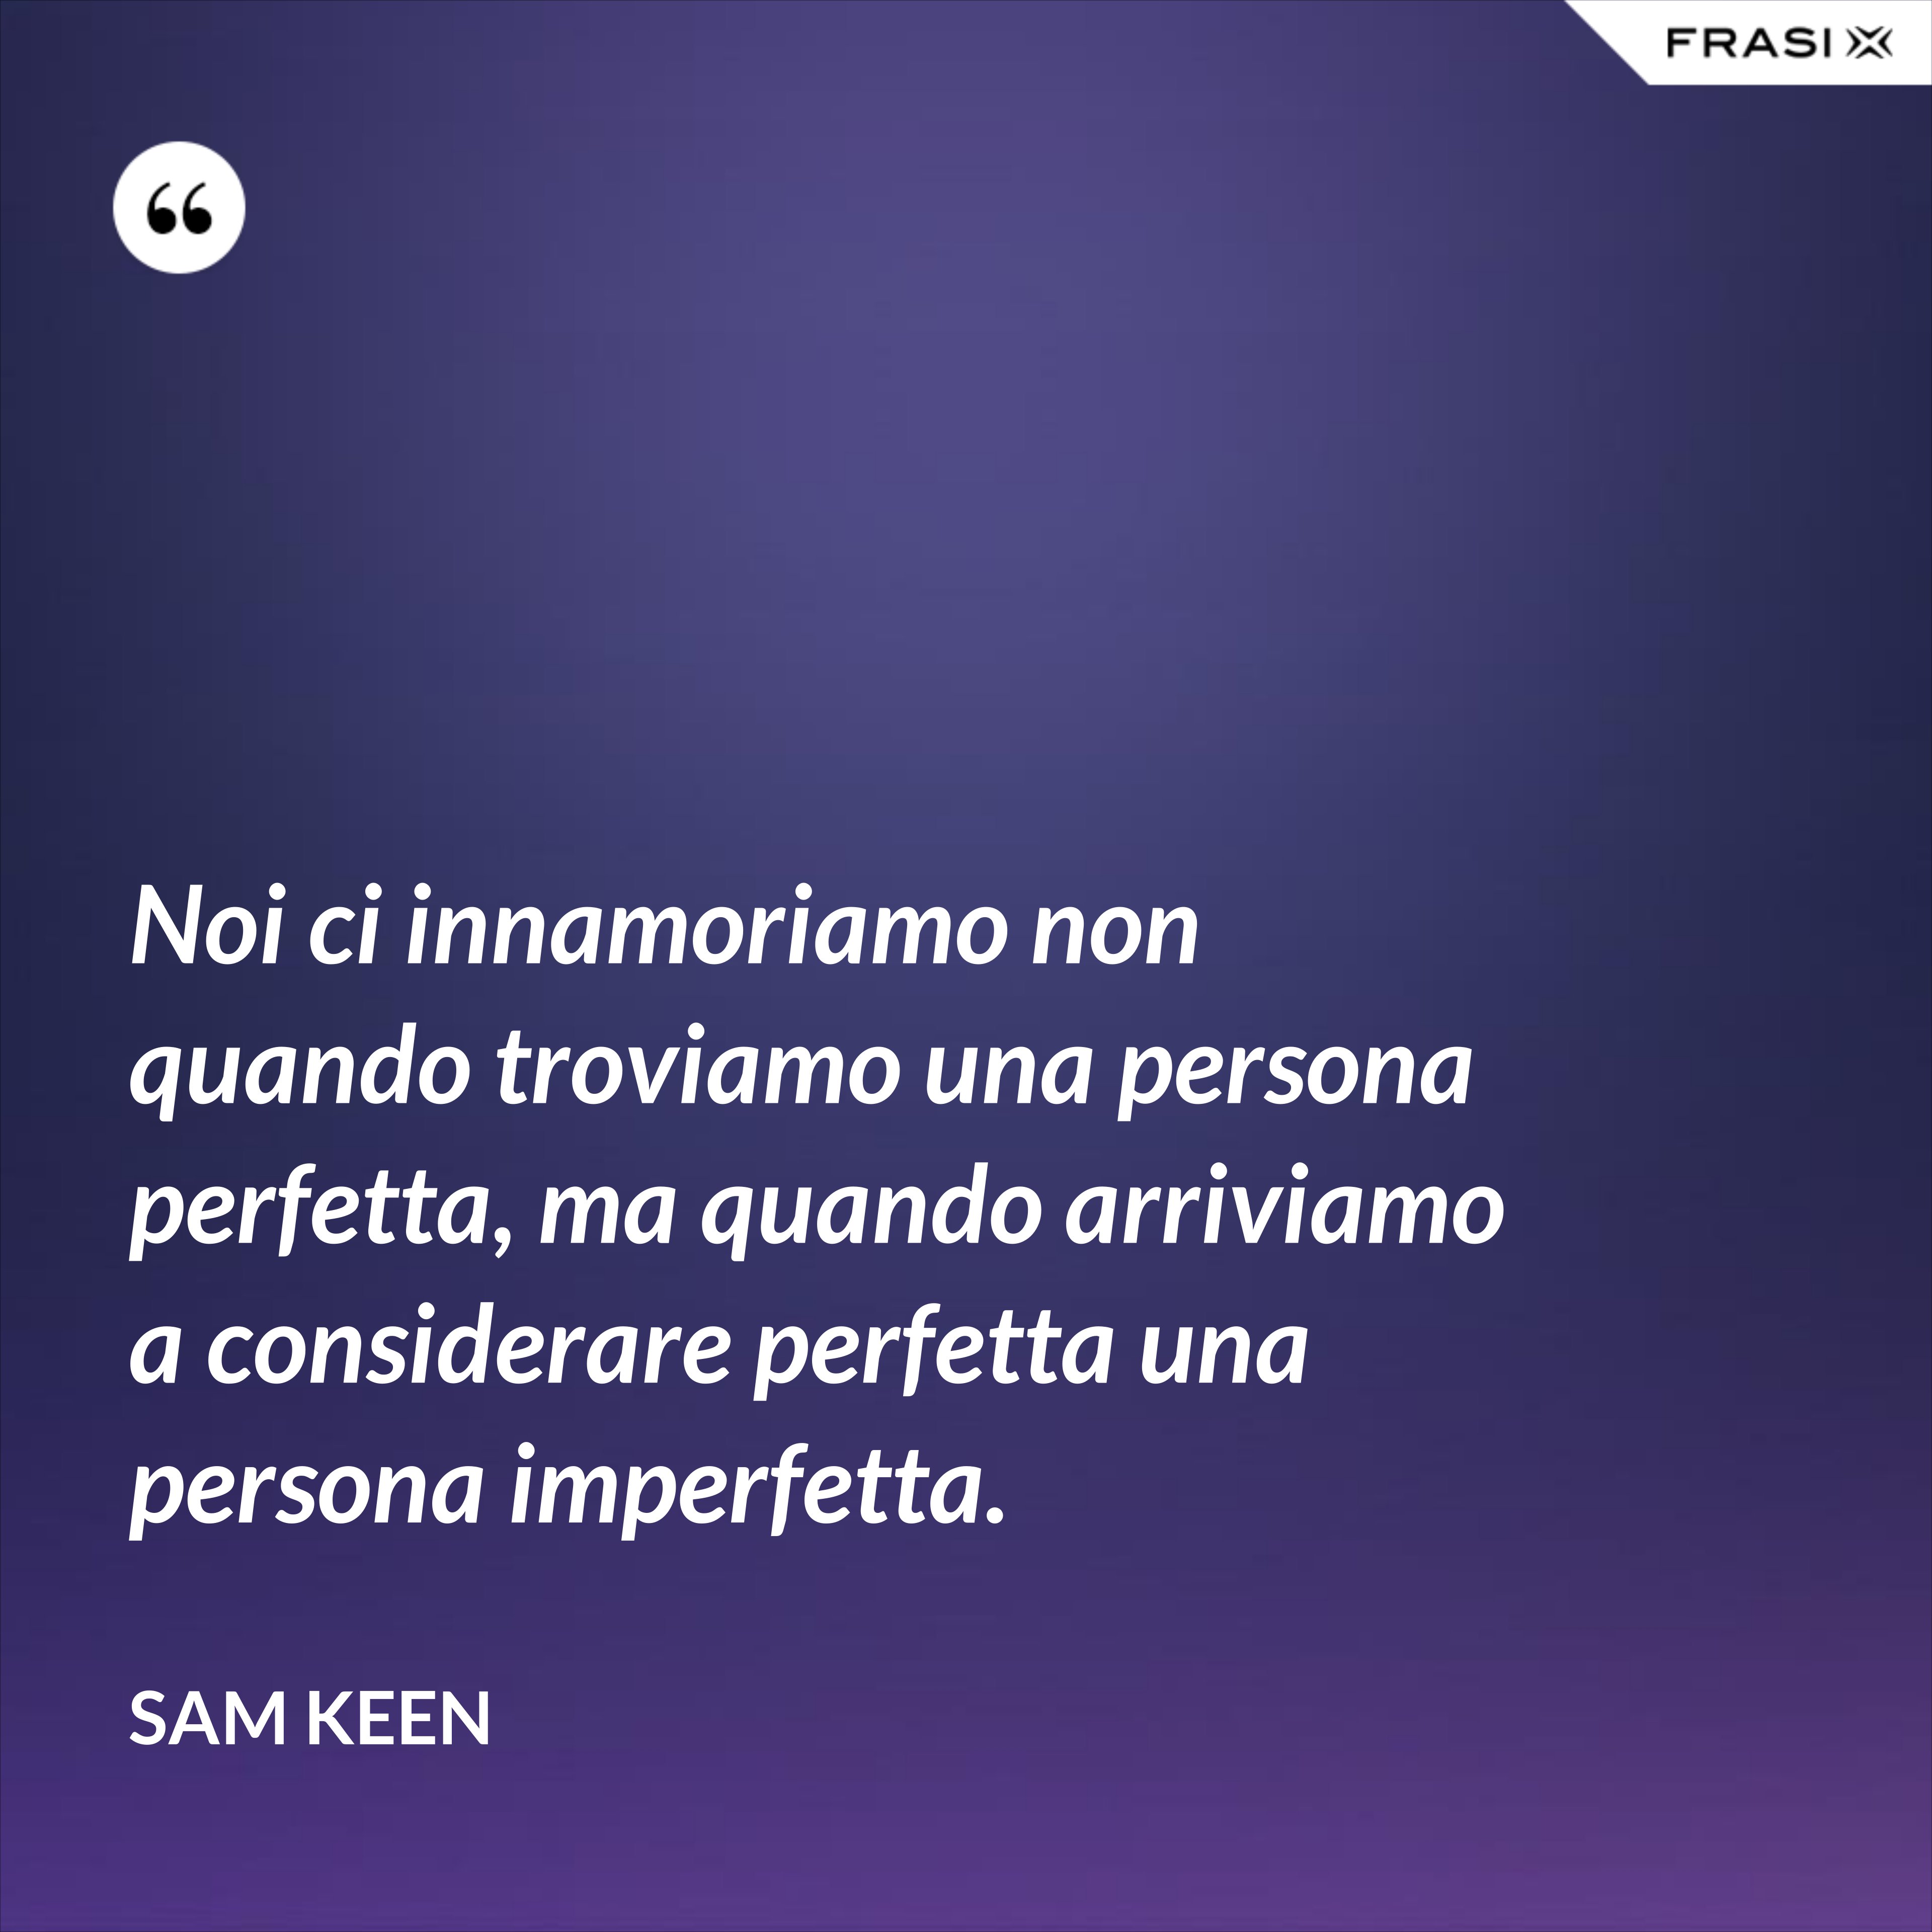 Noi ci innamoriamo non quando troviamo una persona perfetta, ma quando arriviamo a considerare perfetta una persona imperfetta. - Sam Keen